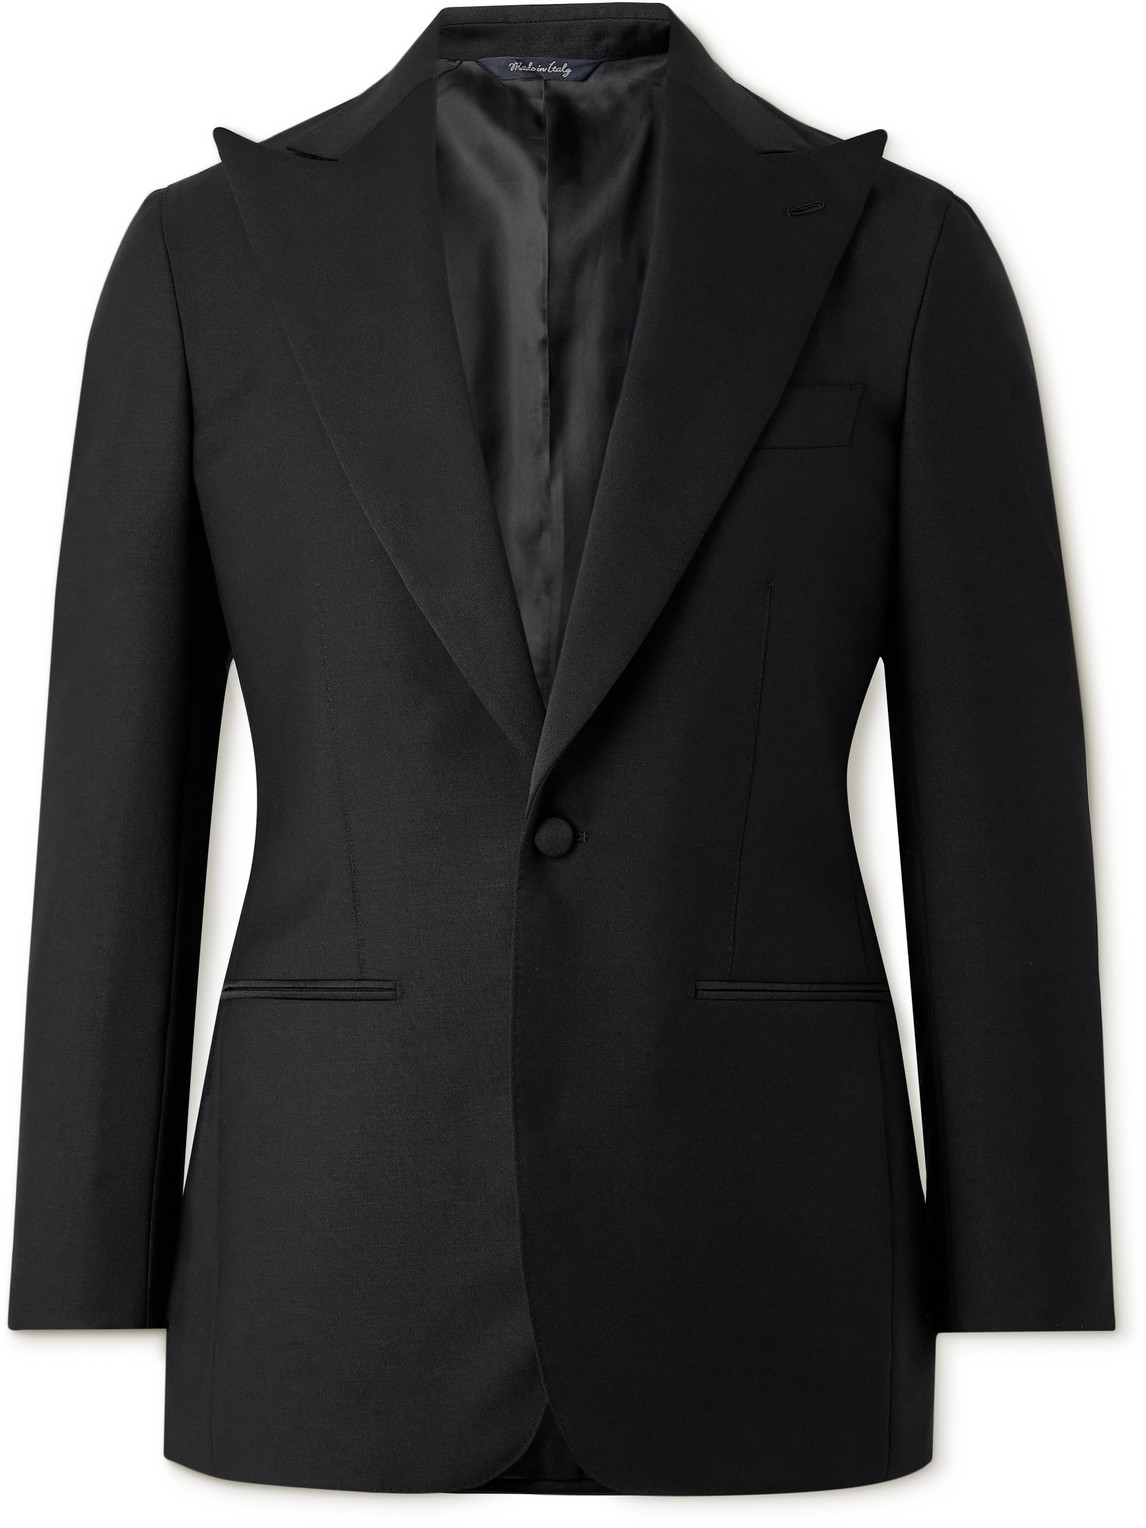 Grosgrain-Trimmed Wool Tuxedo Jacket